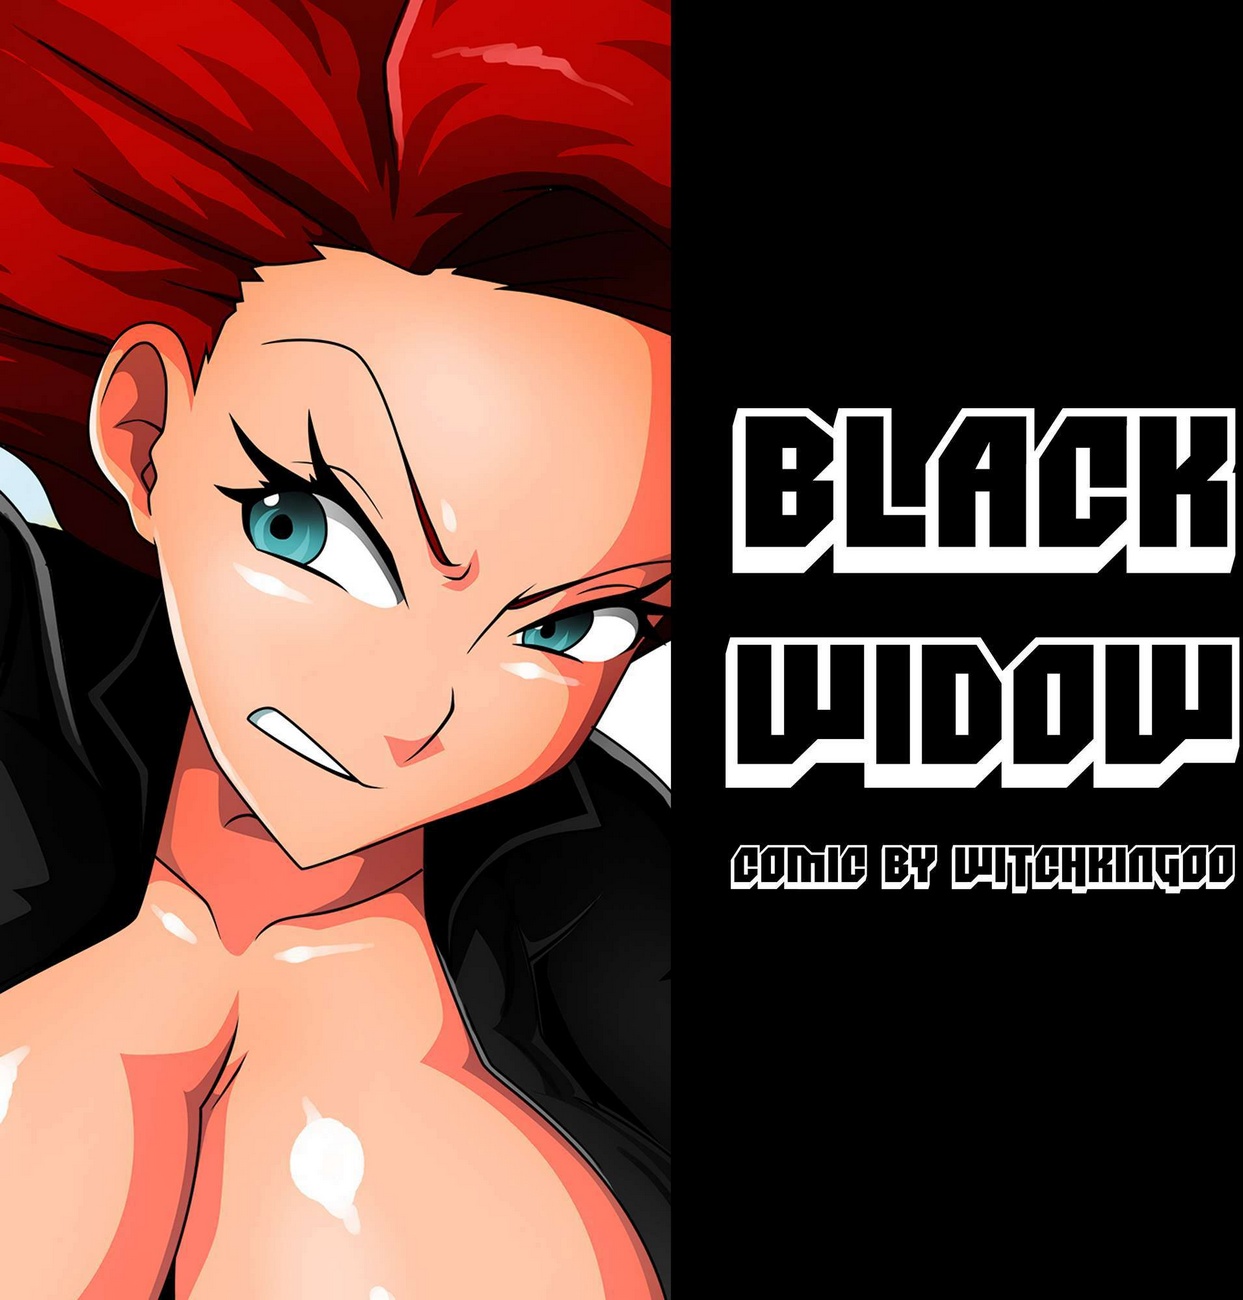 Black Widow Cartoon Porn - Black Widow - Witchking00 - KingComiX.com